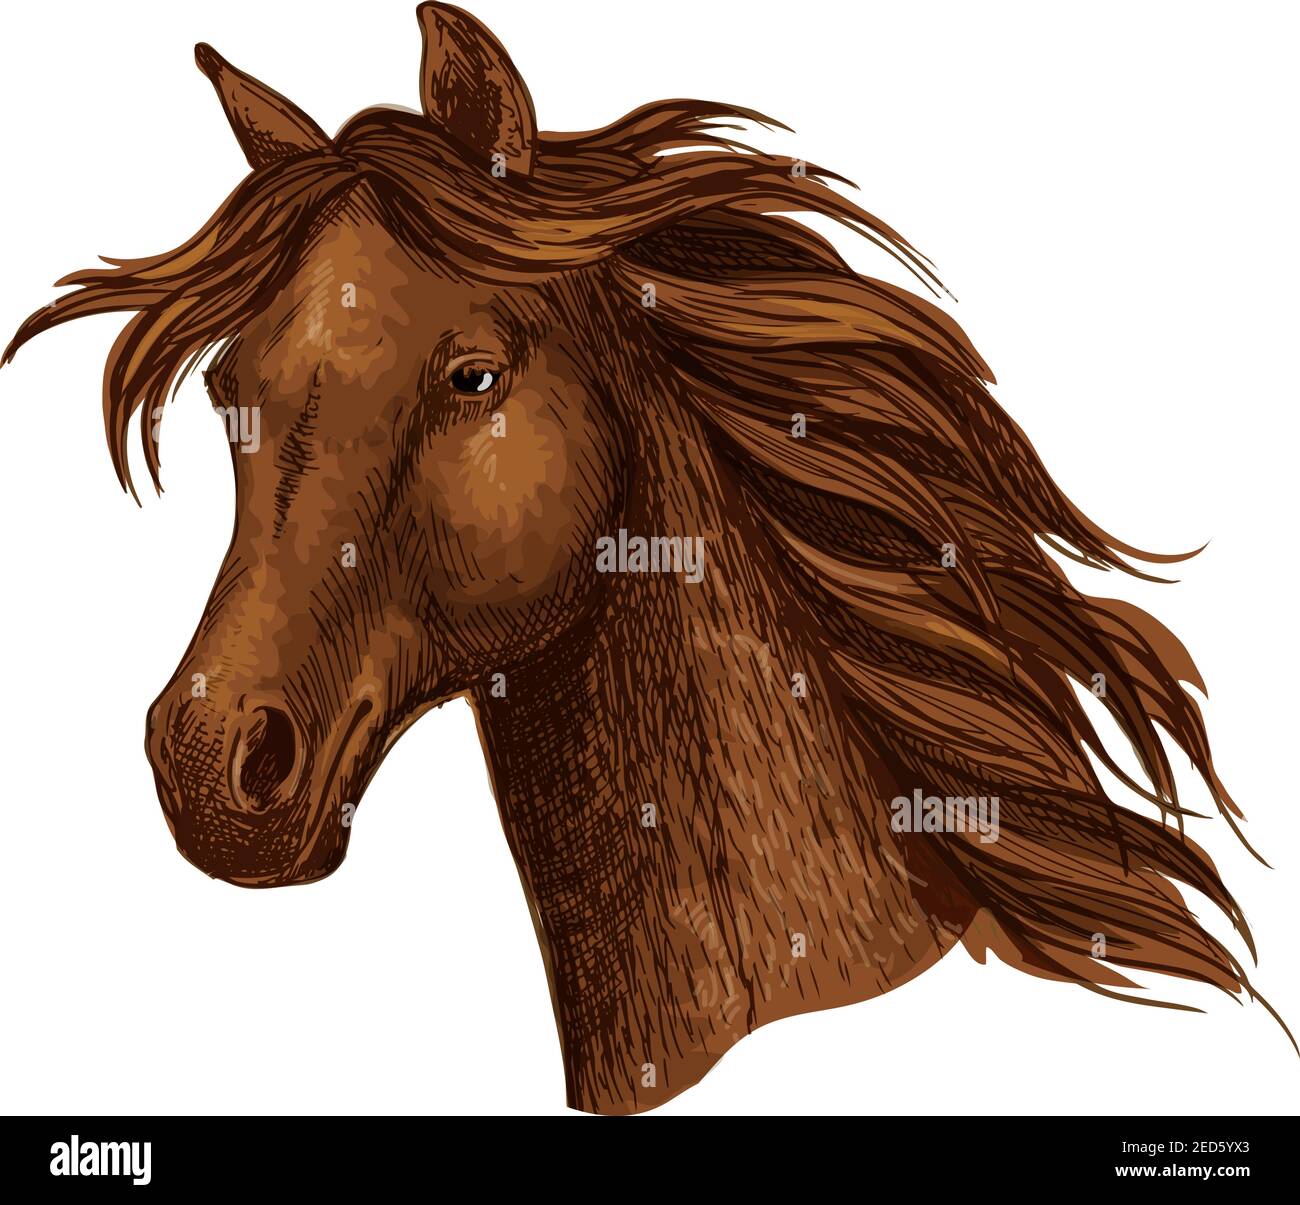 Arabian braun Pferderennen Sport Emblem. Kräftiger, reinrassige Mustang-Hengst trabte. Pferdestute mit welliger Mähne Stock Vektor